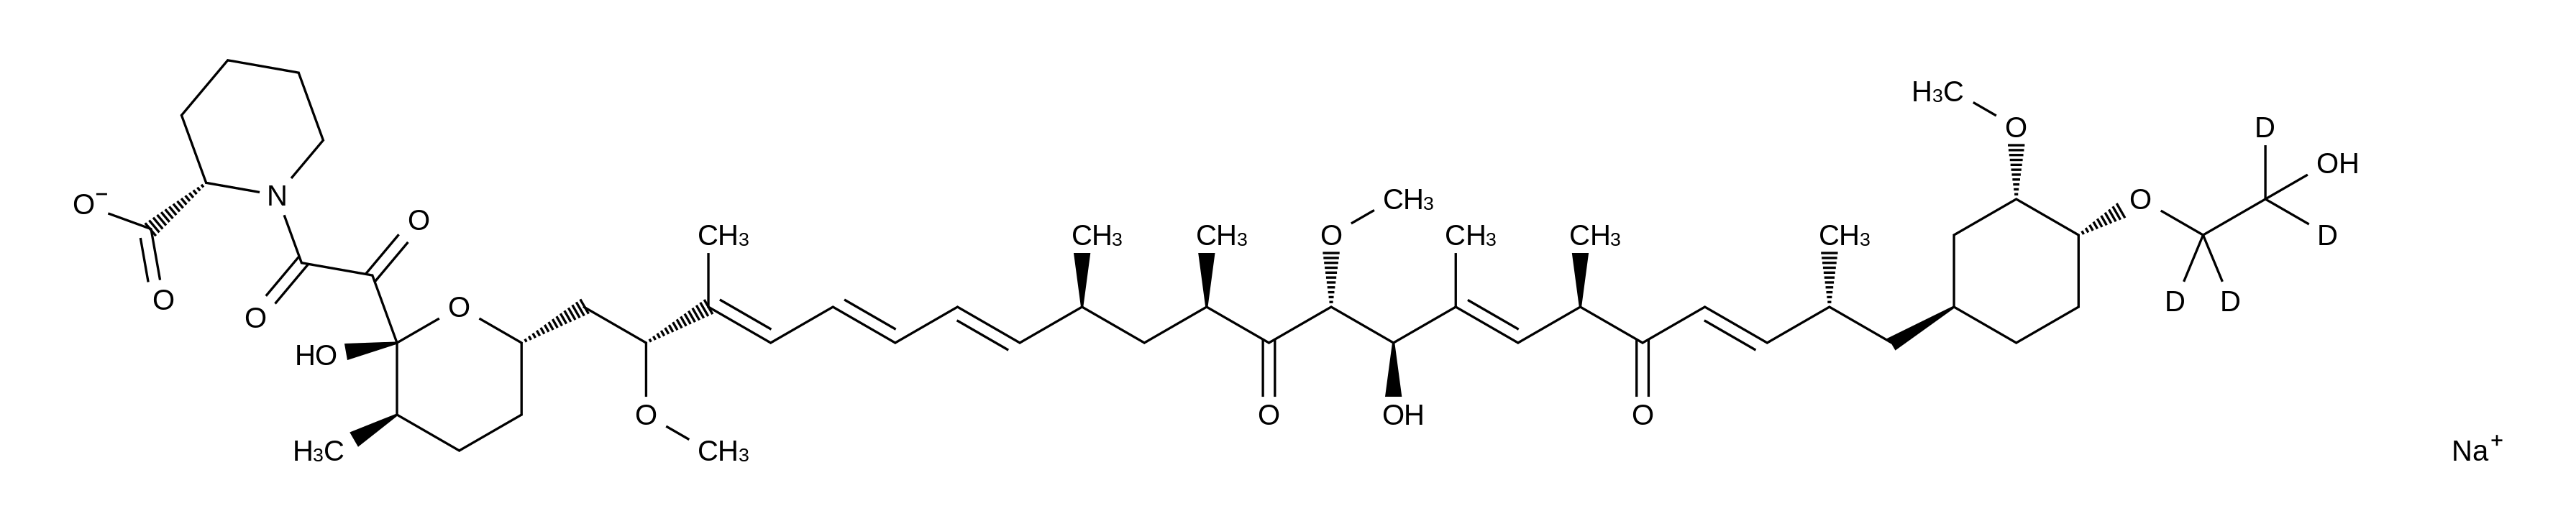 (19E/Z)-seco-[4-O-[2-Hydroxy(ethyl)-d<sub>4</sub>]] Rapamycin Sodium Salt